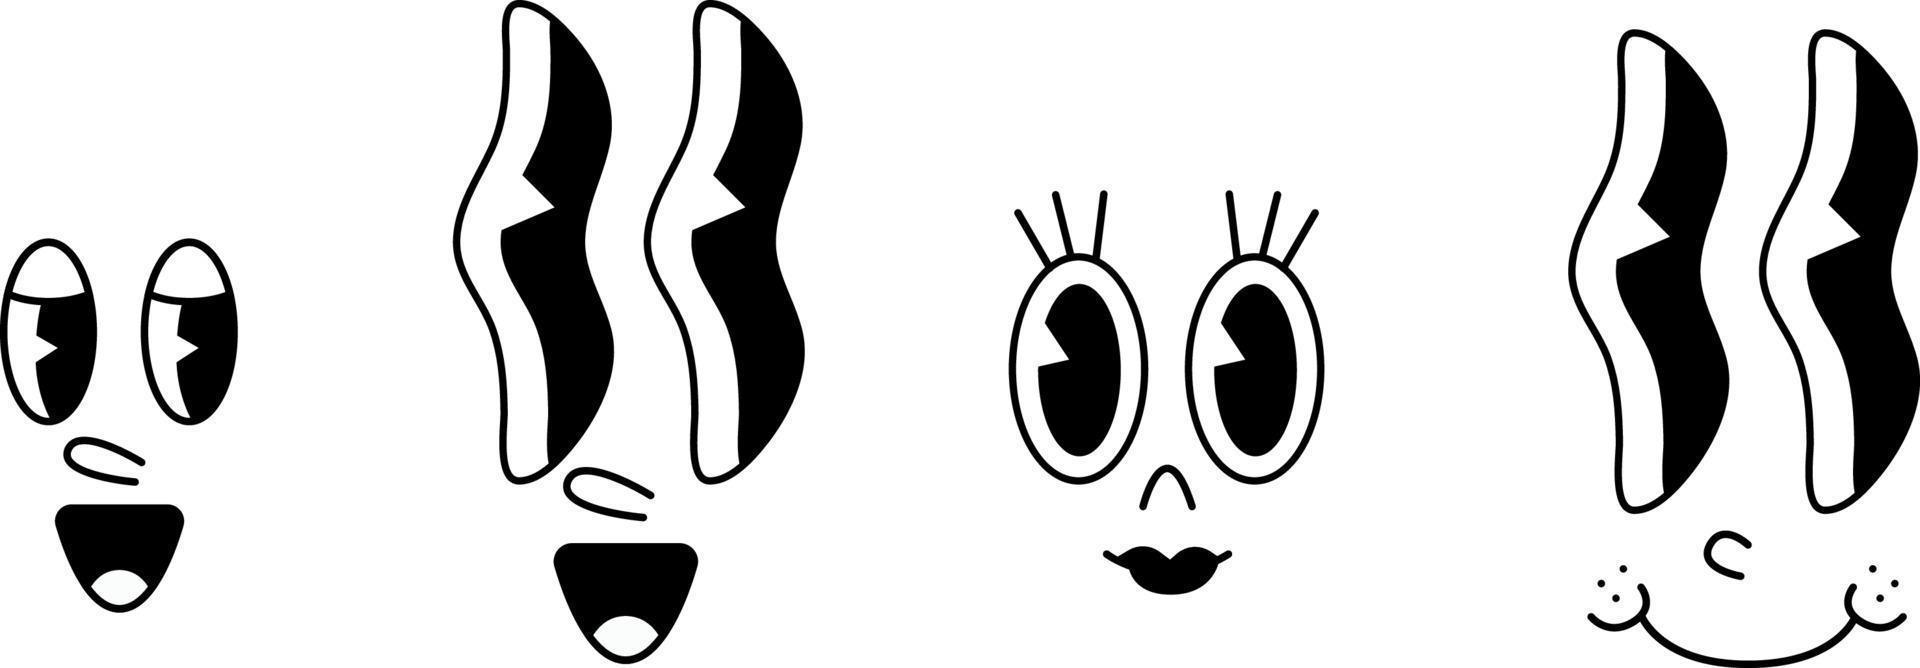 caras de personajes de dibujos animados retro vector